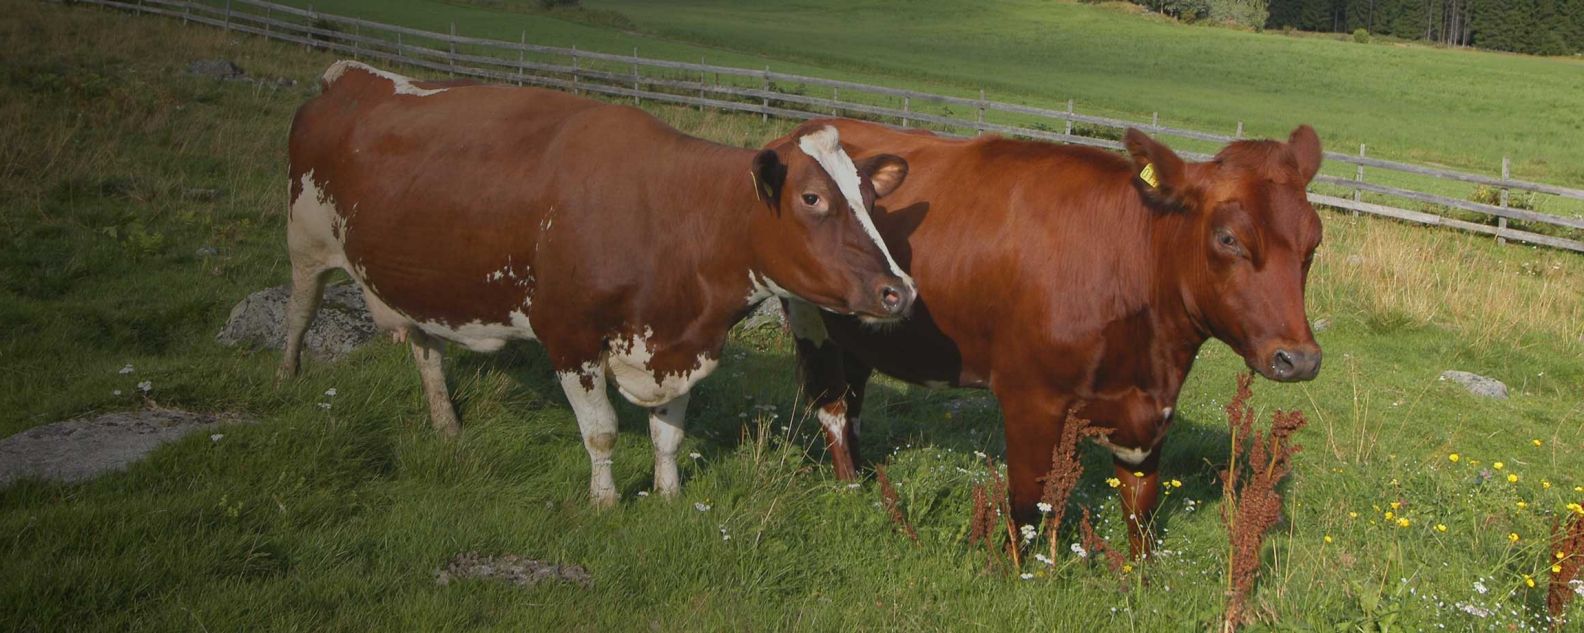 Mucche in un pascolo in Norvegia